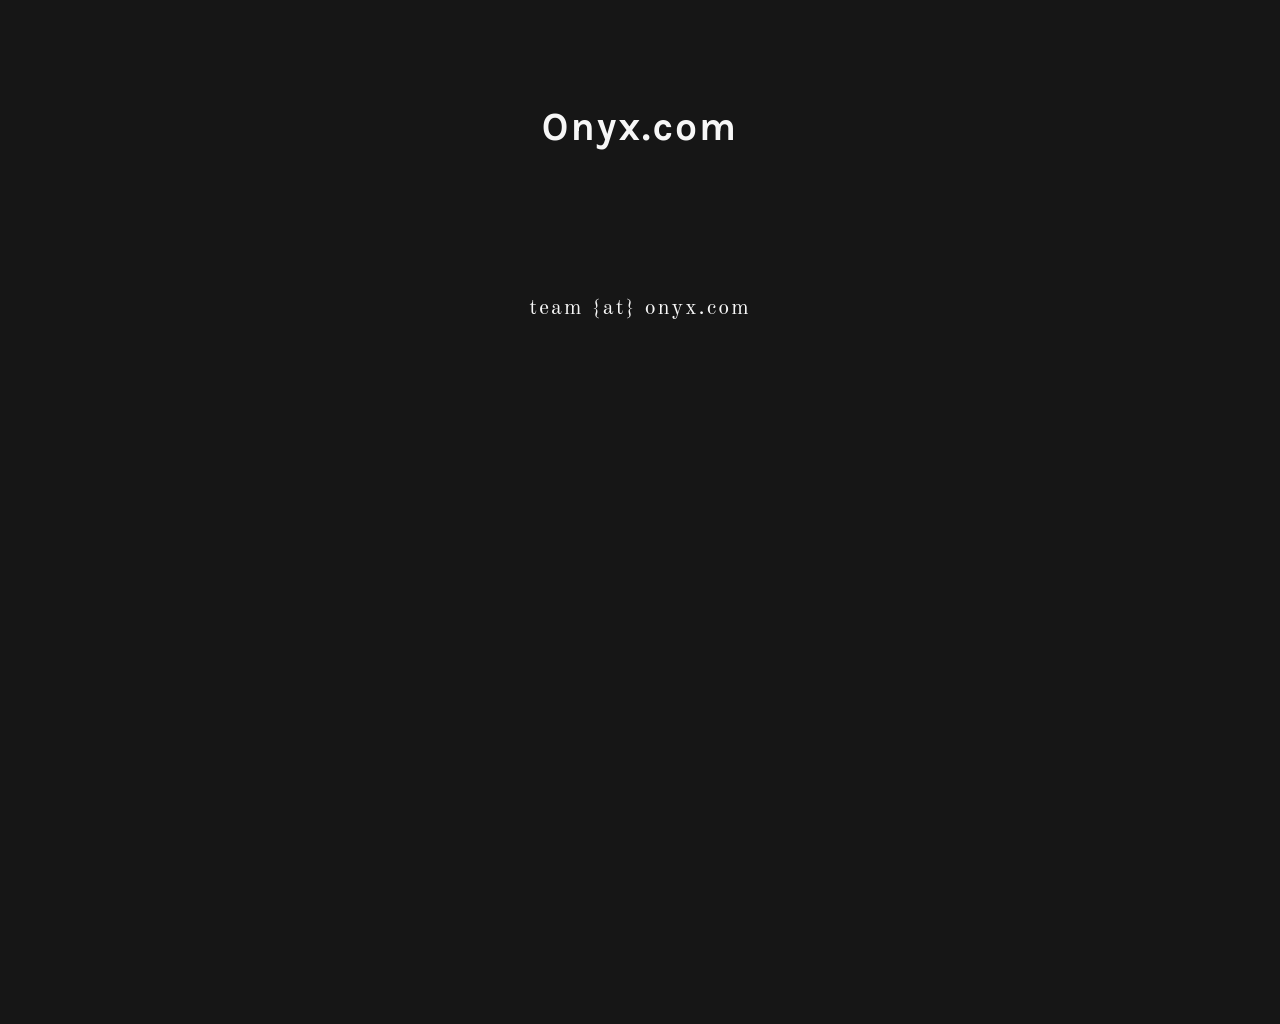 onyx.com